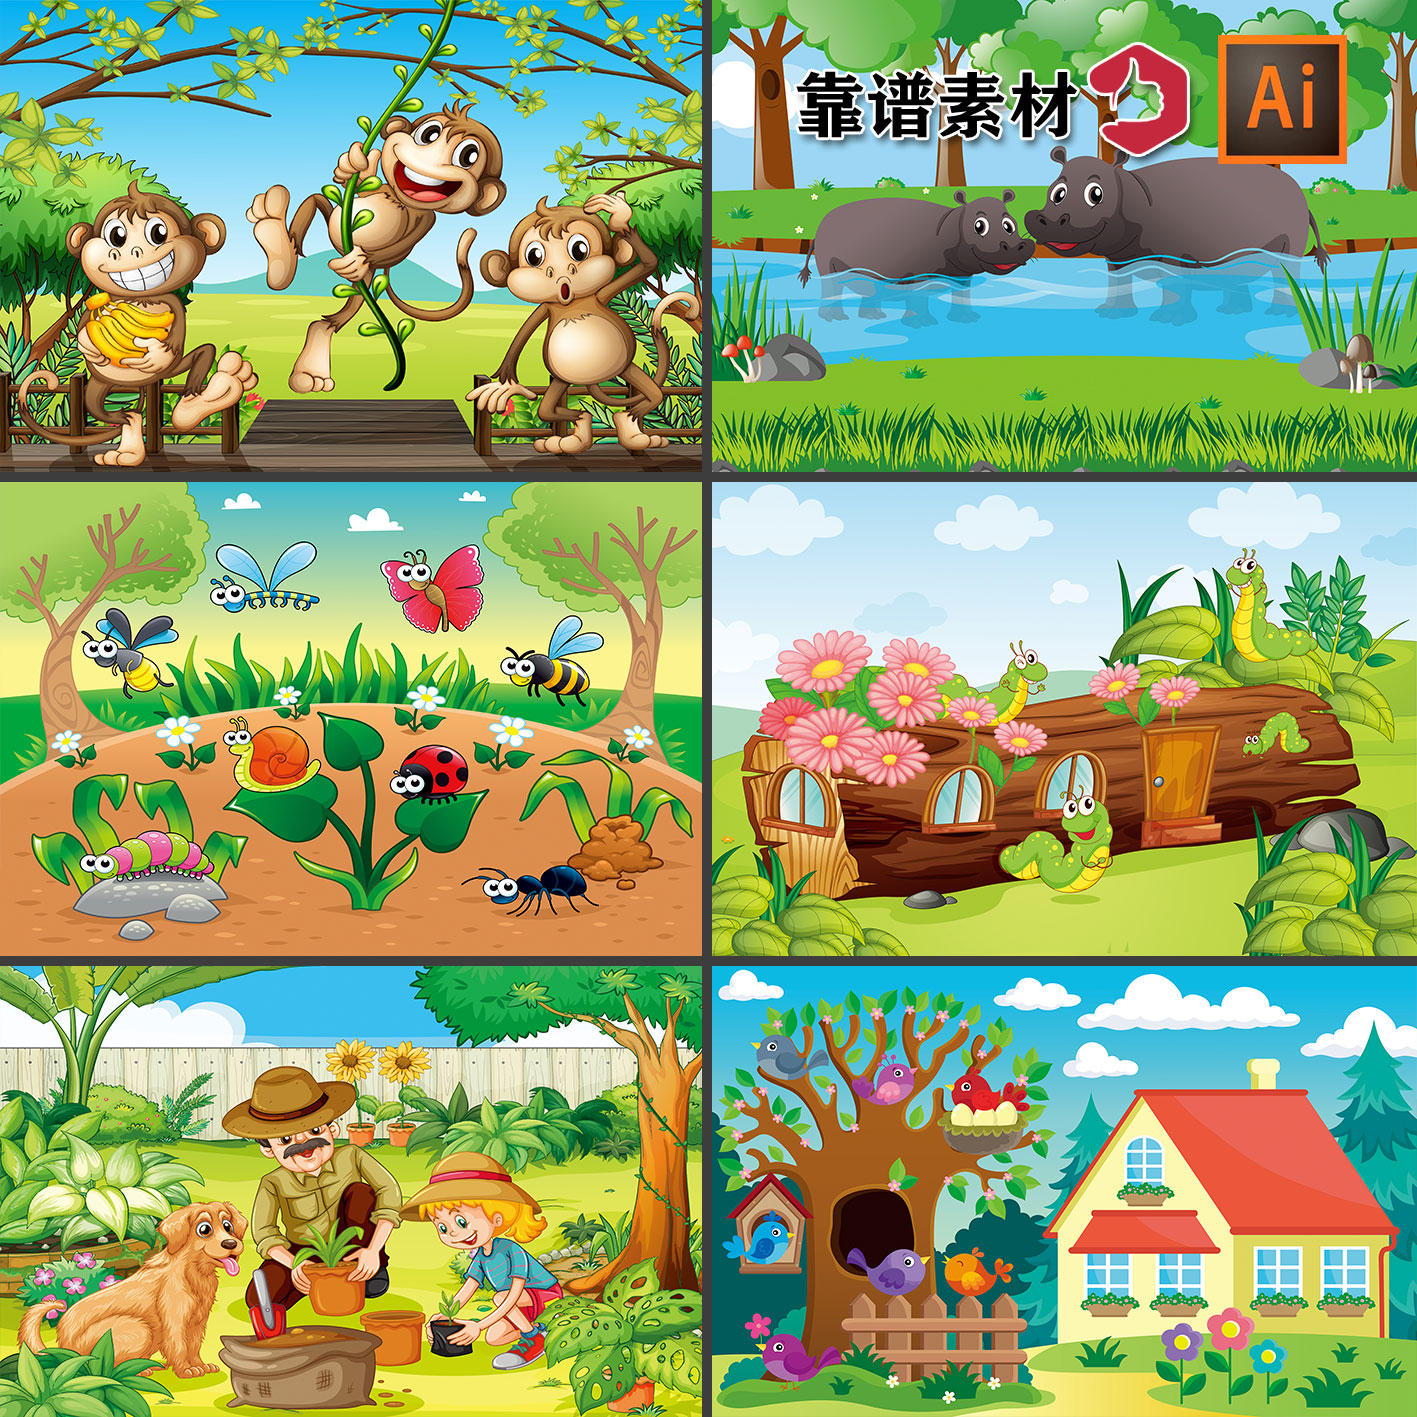 猴子小朋友游乐玩耍河马农场房子大象卡通插画AI设计素材